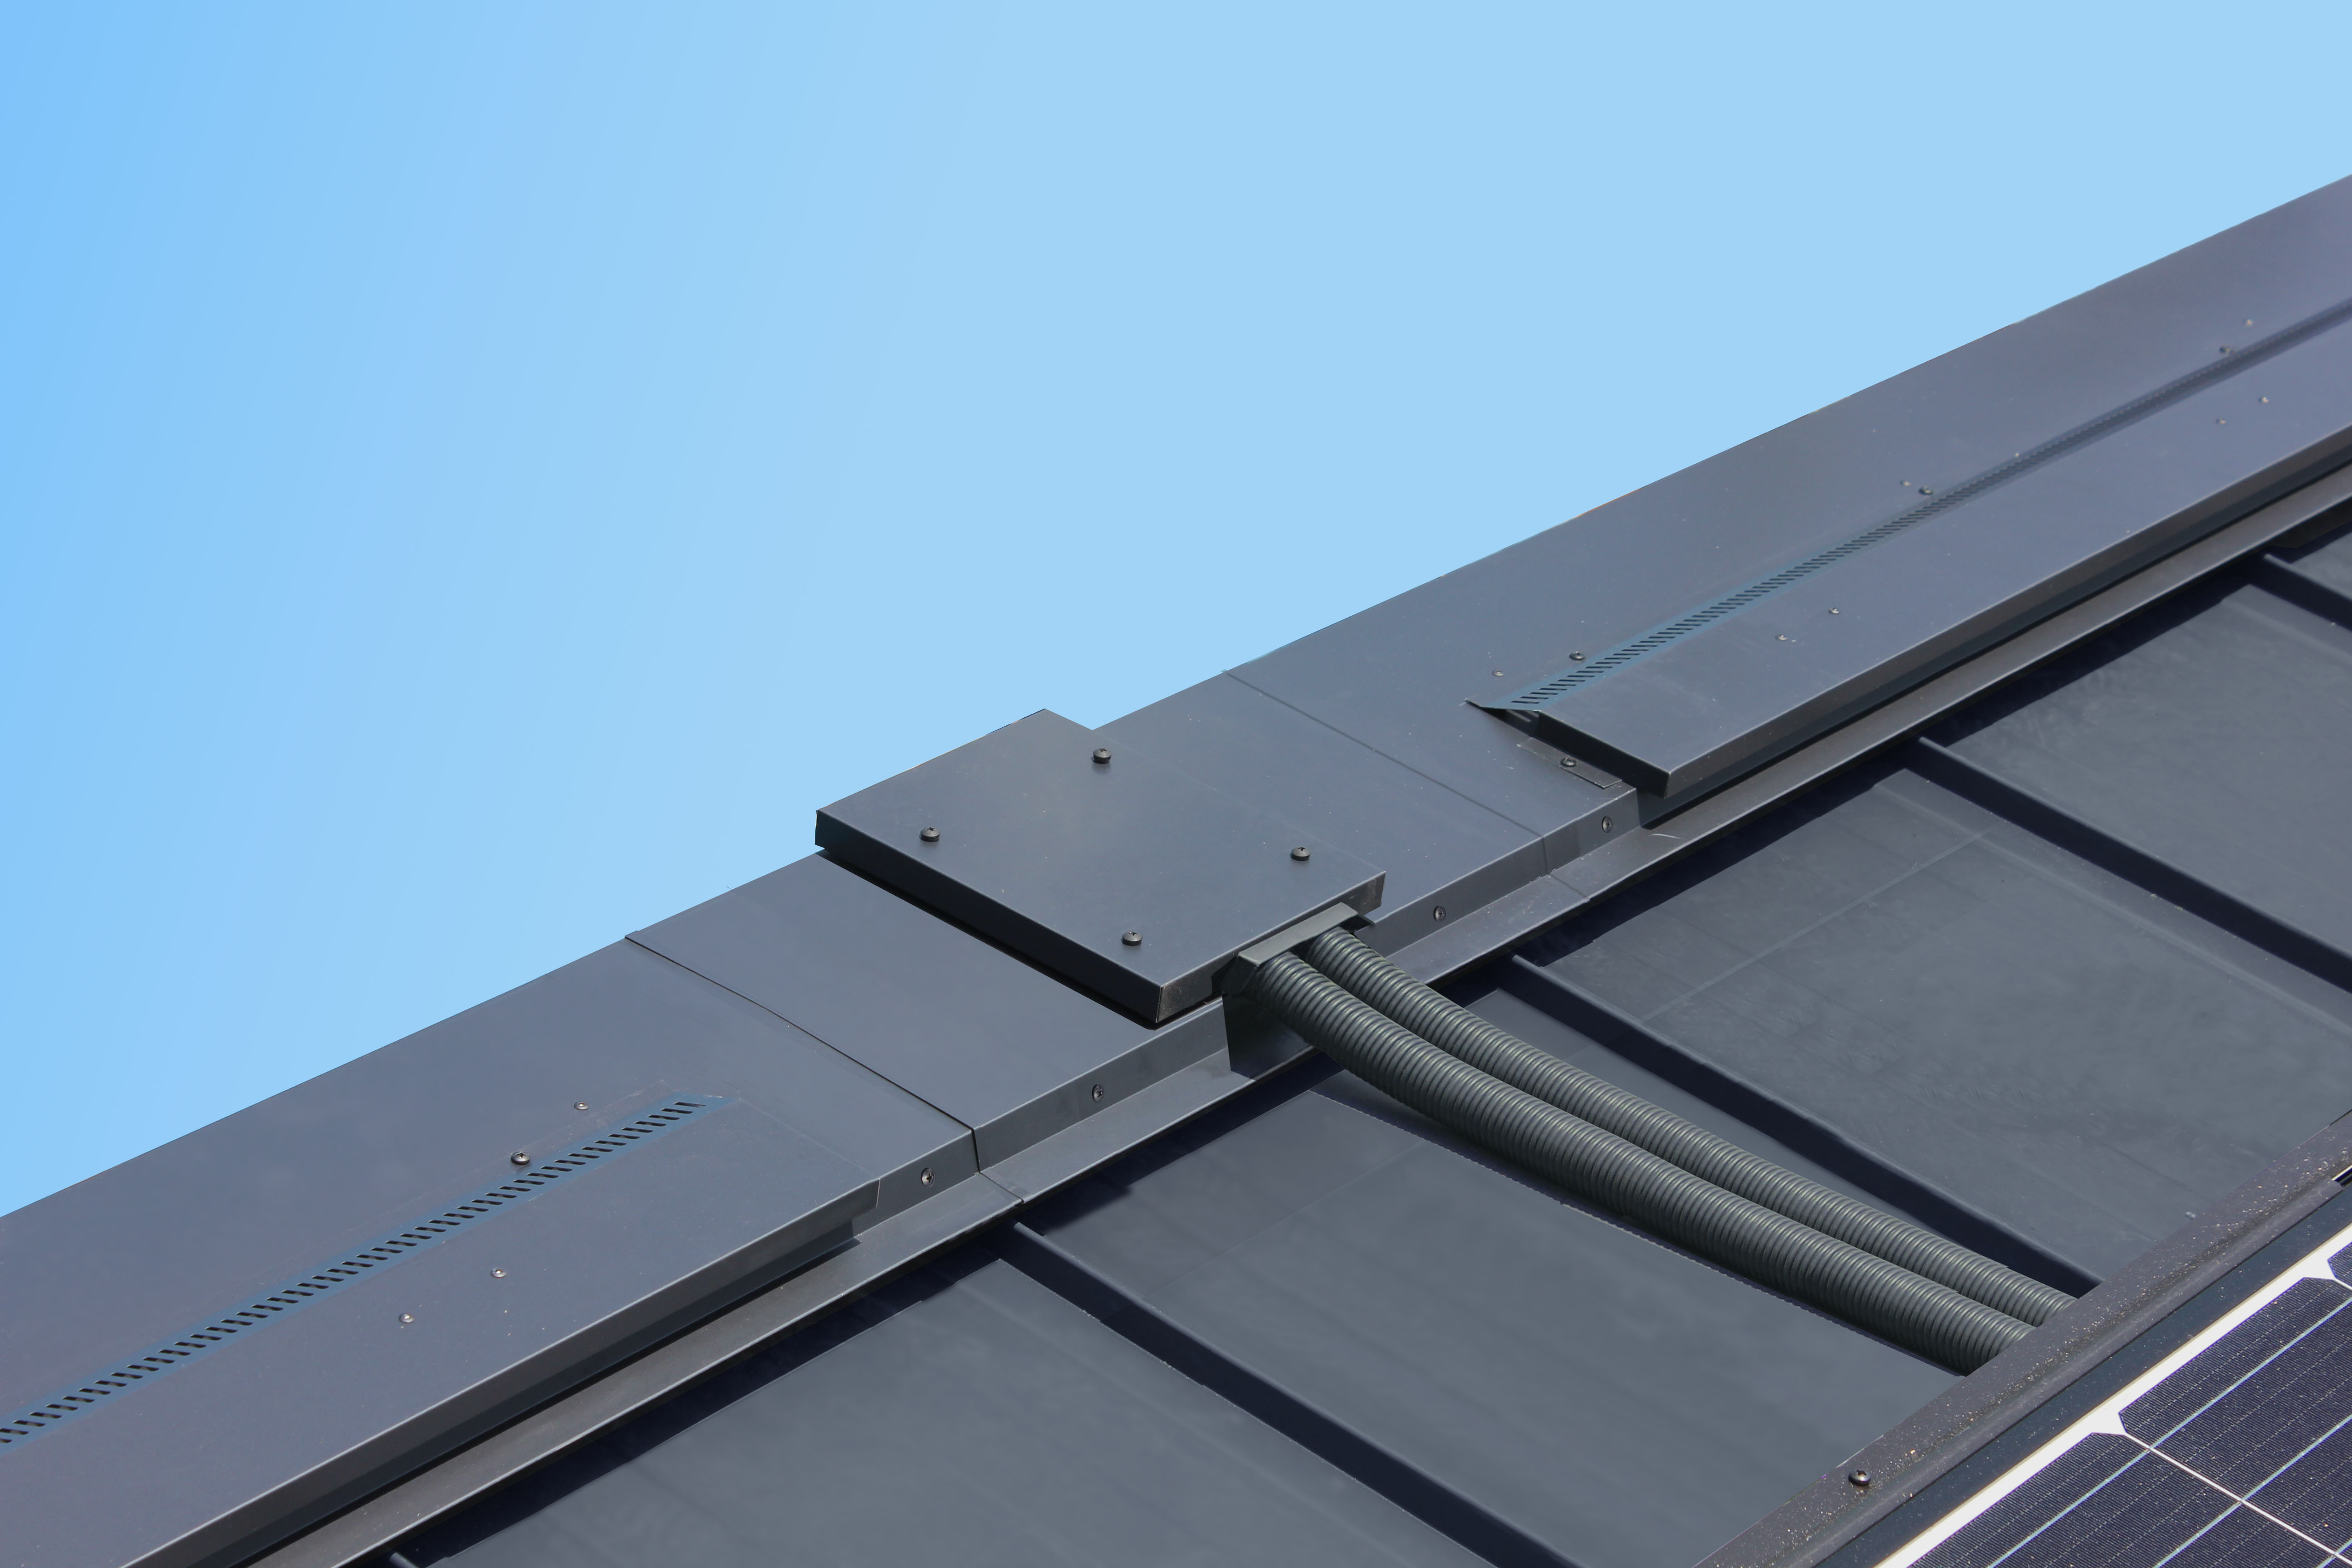 緩勾配の片流れ屋根で太陽光パネル設置の困り事を解決入線ユニット片流れ双快用を発売 株式会社トーコーのプレスリリース